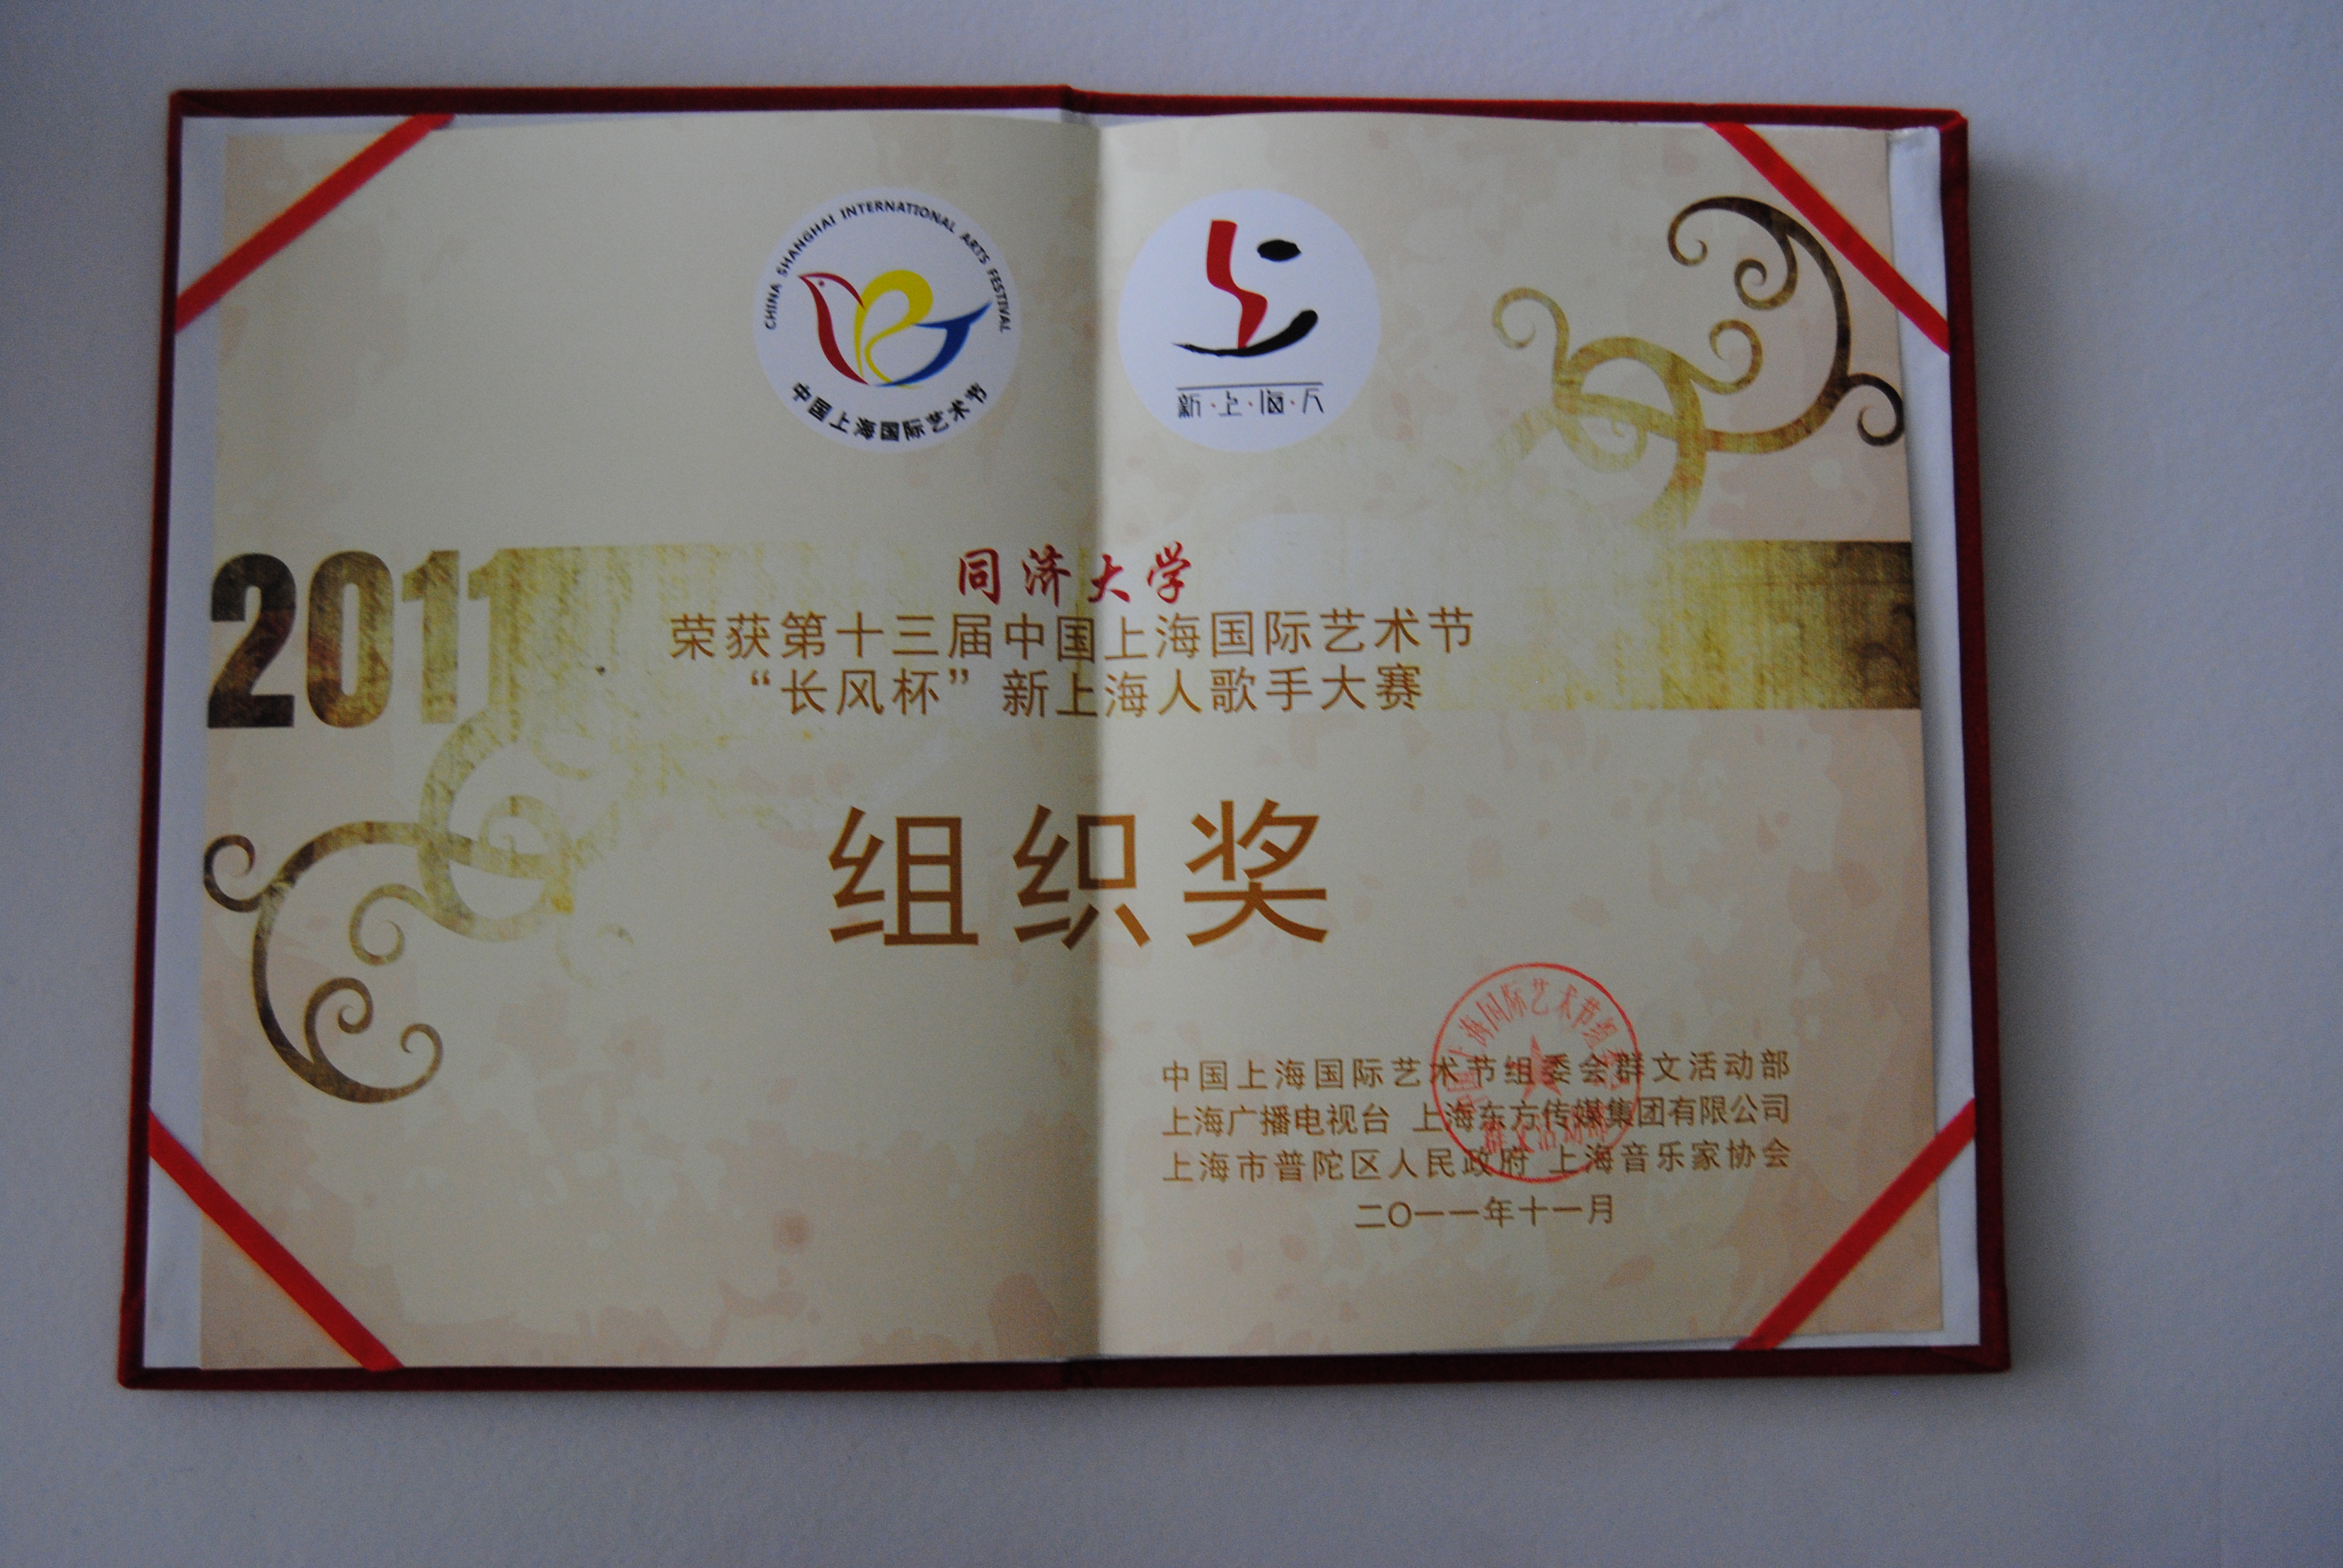 第十三届中国上海国际艺术节新上海人歌手大赛组织奖